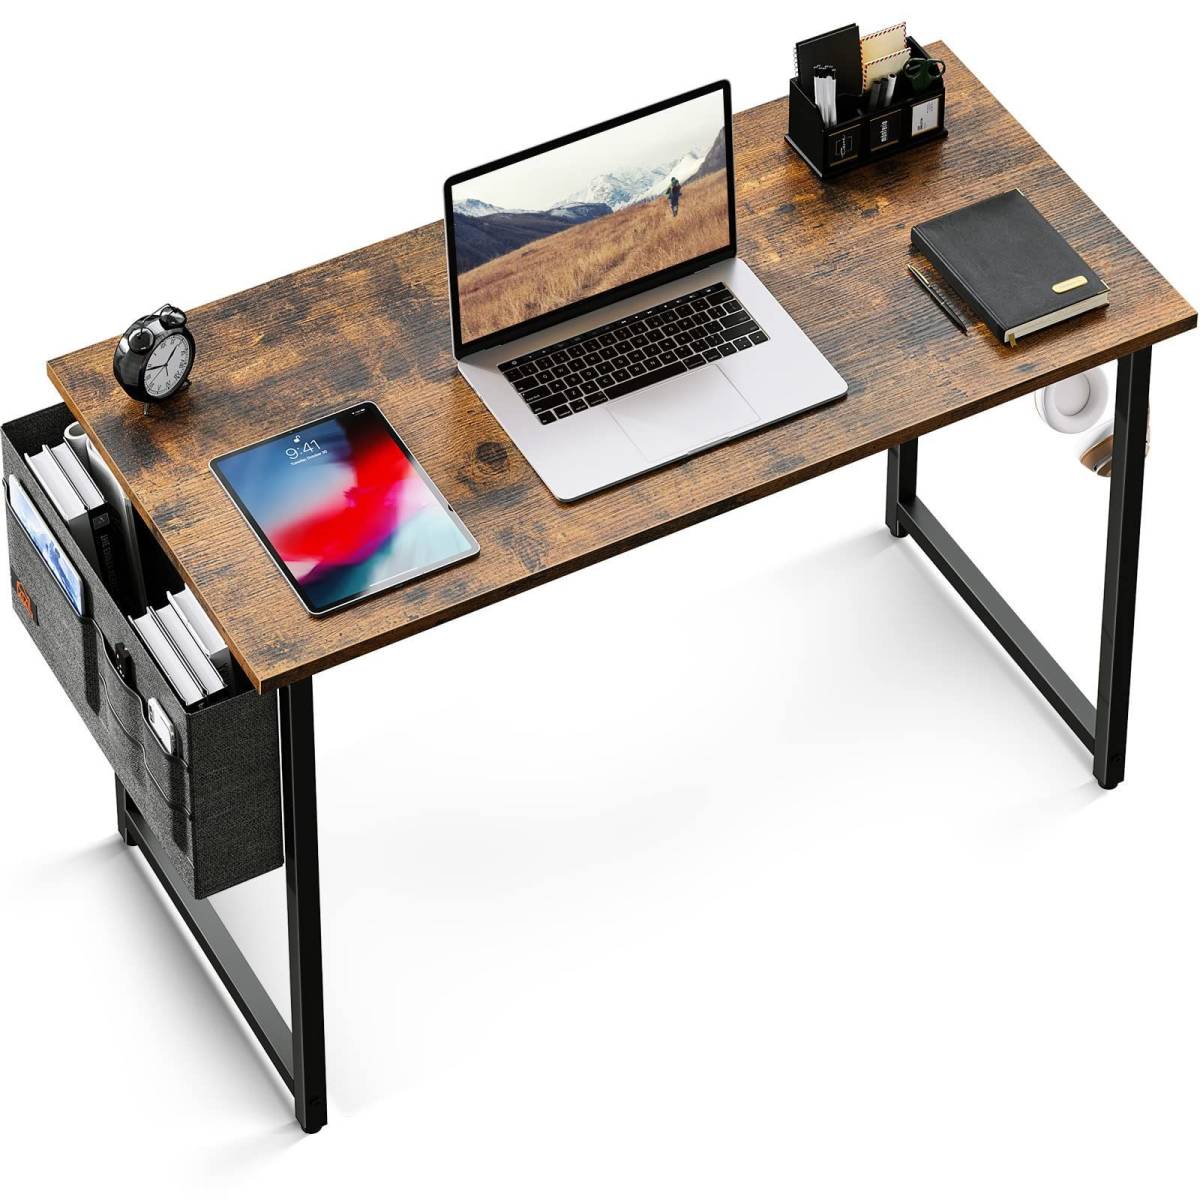 2022人気新作 作業机 desk ワークデスク pcデスク組立簡単机ゲーミングデスク 幅100cm×奥行50cm 収納袋付き 木材